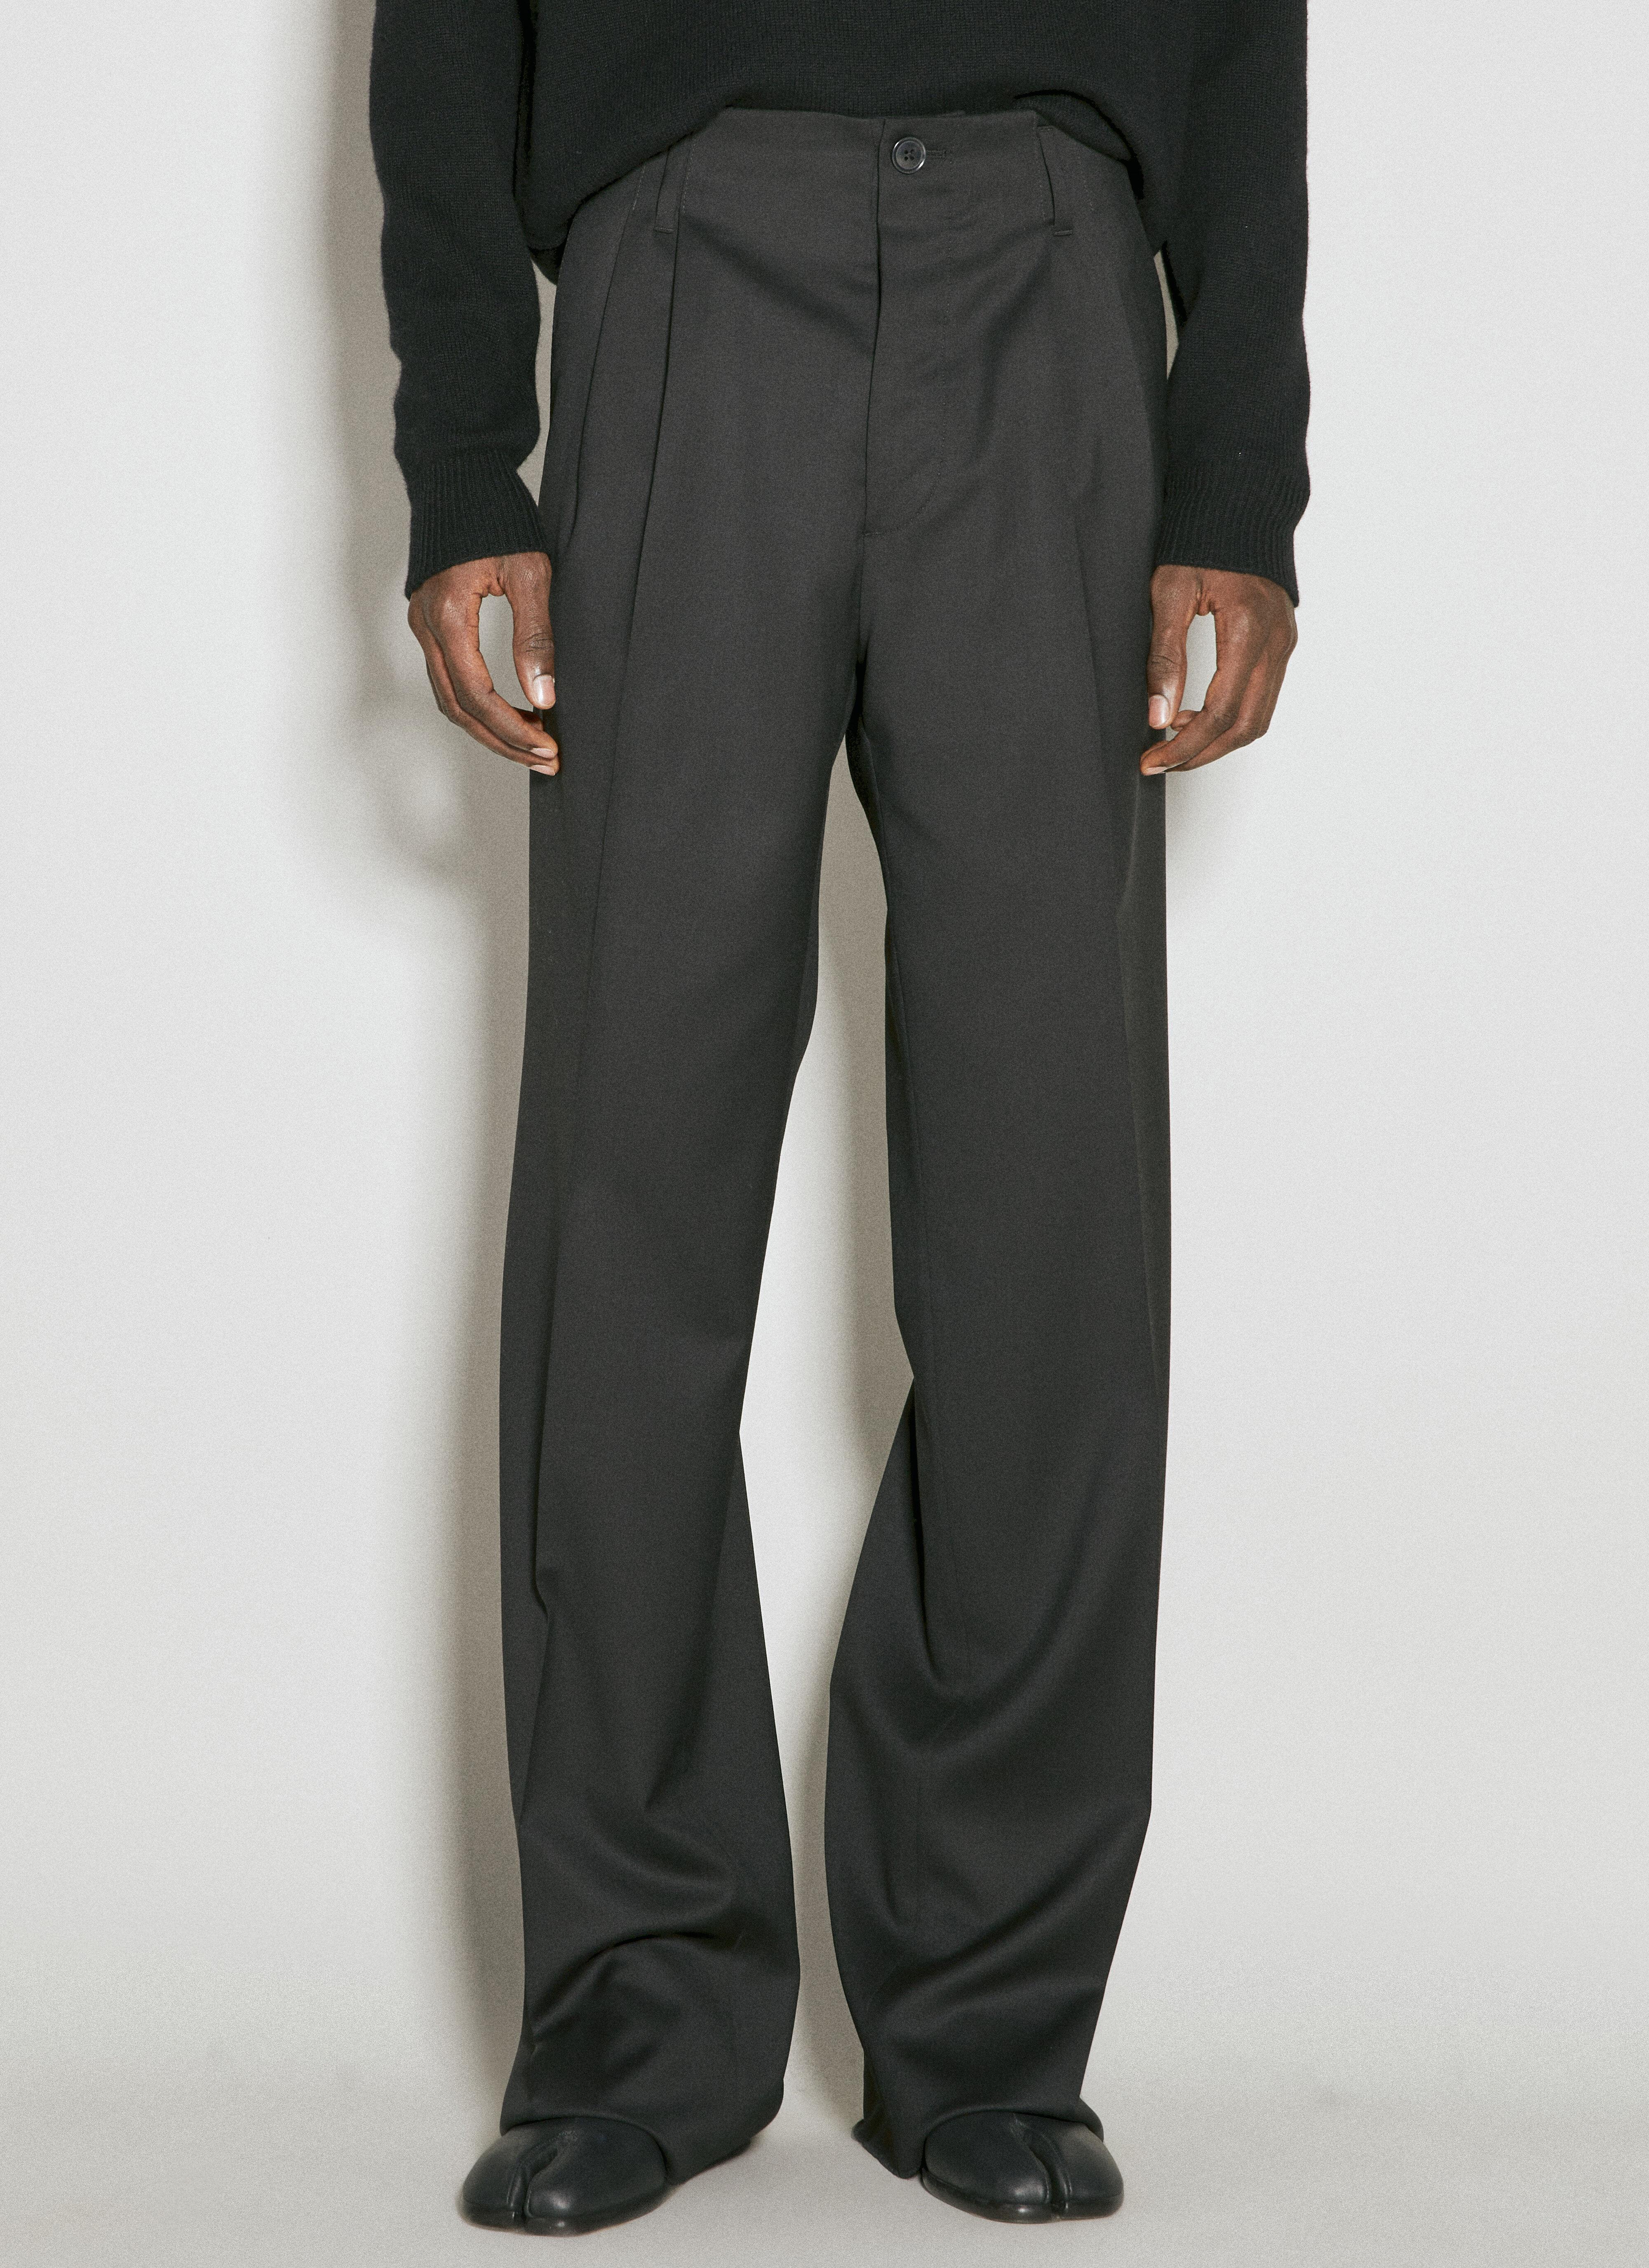 Vivienne Westwood Raf Wool Pants Black vvw0155001